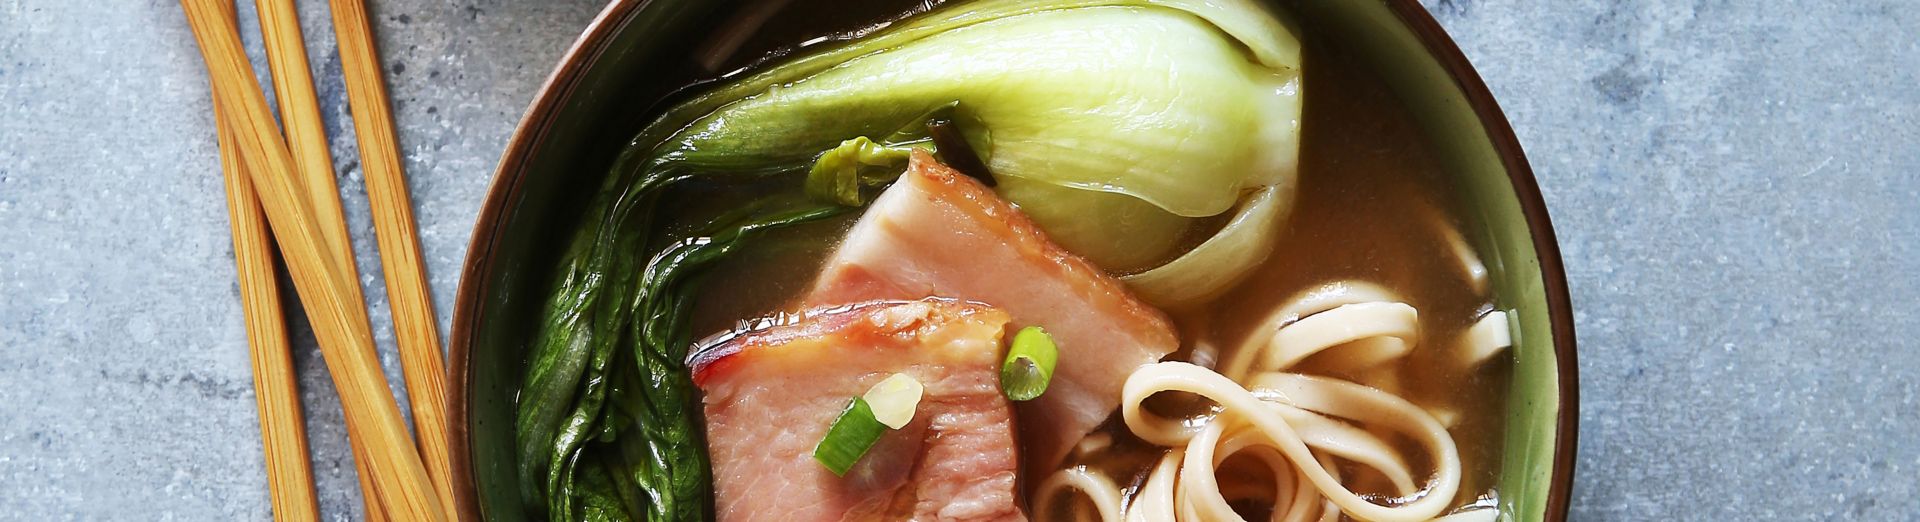 Udon-Nudelsuppe in Schüsseln als Symbol für von TEWAY kreierte Suppenbasen